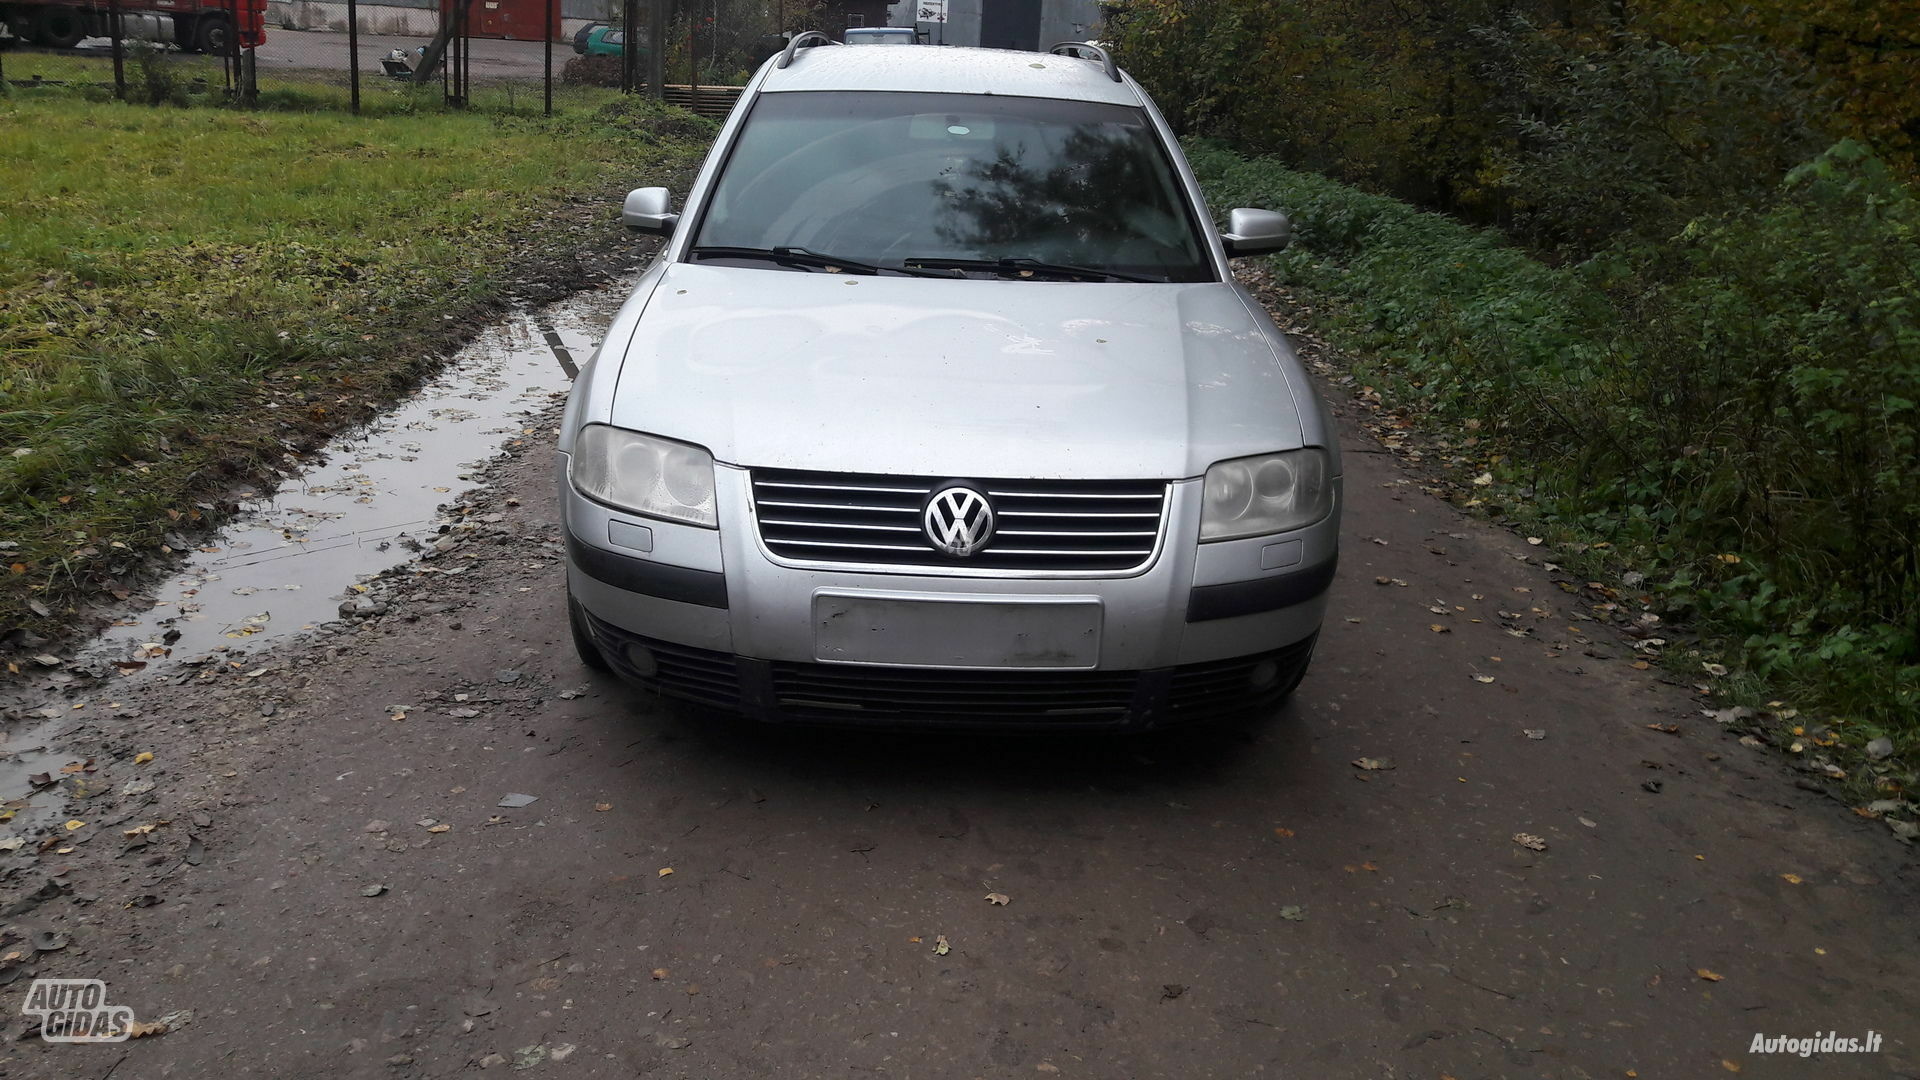 Volkswagen Passat 2001 m dalys